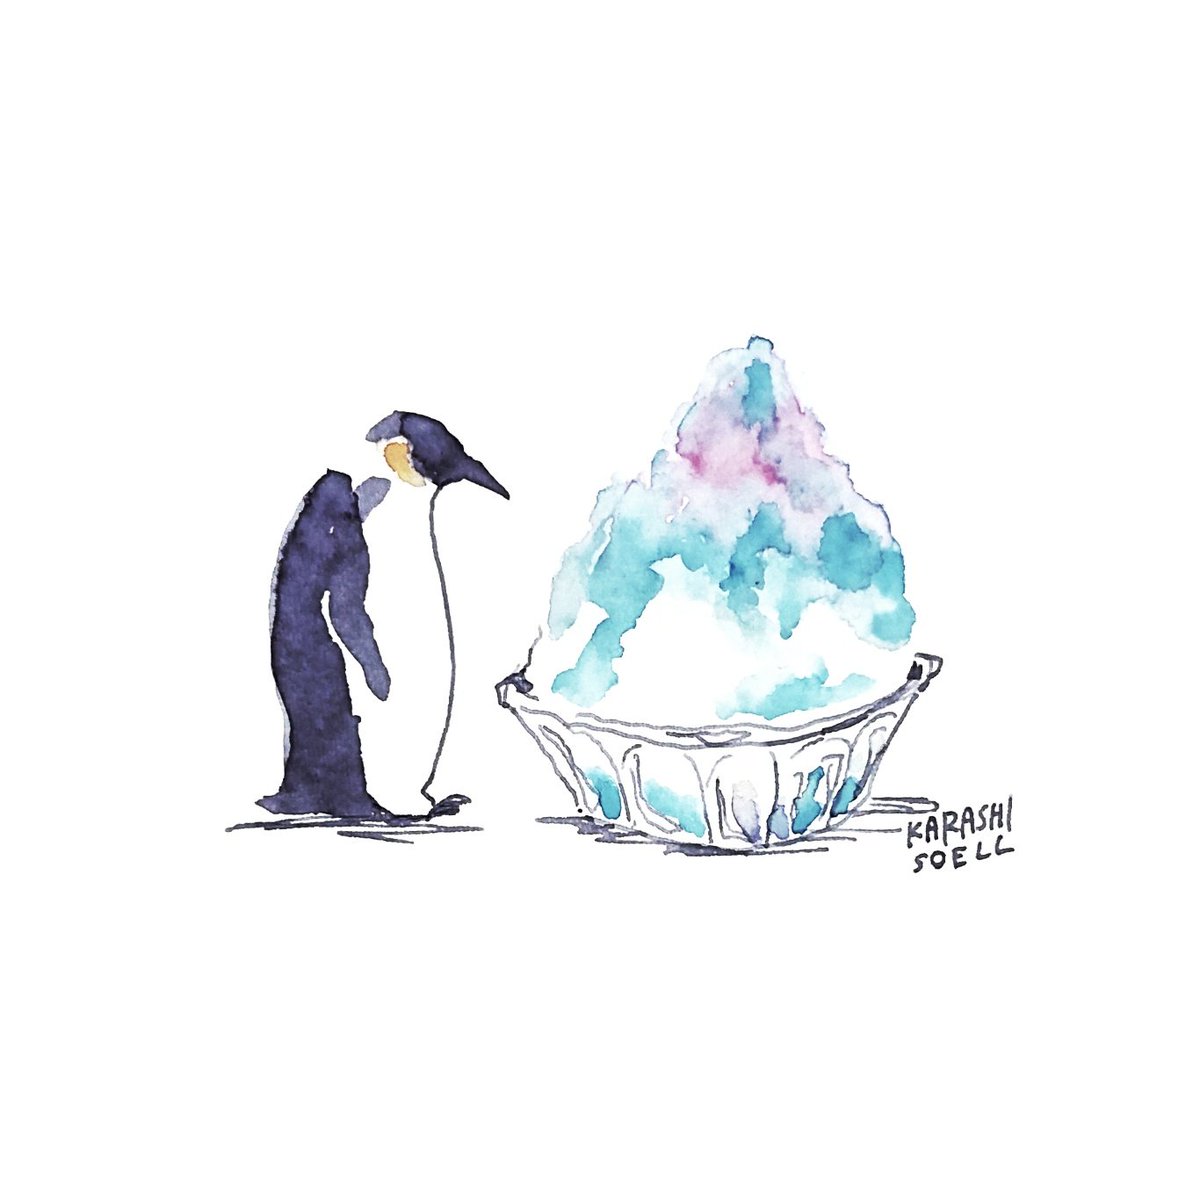 カラシソエル イラストレーター 在 Twitter 上 今日のイラスト ペンギン かき氷と出会う 今日のカラシイラスト T Co Jzb2lyrt5t Twitter